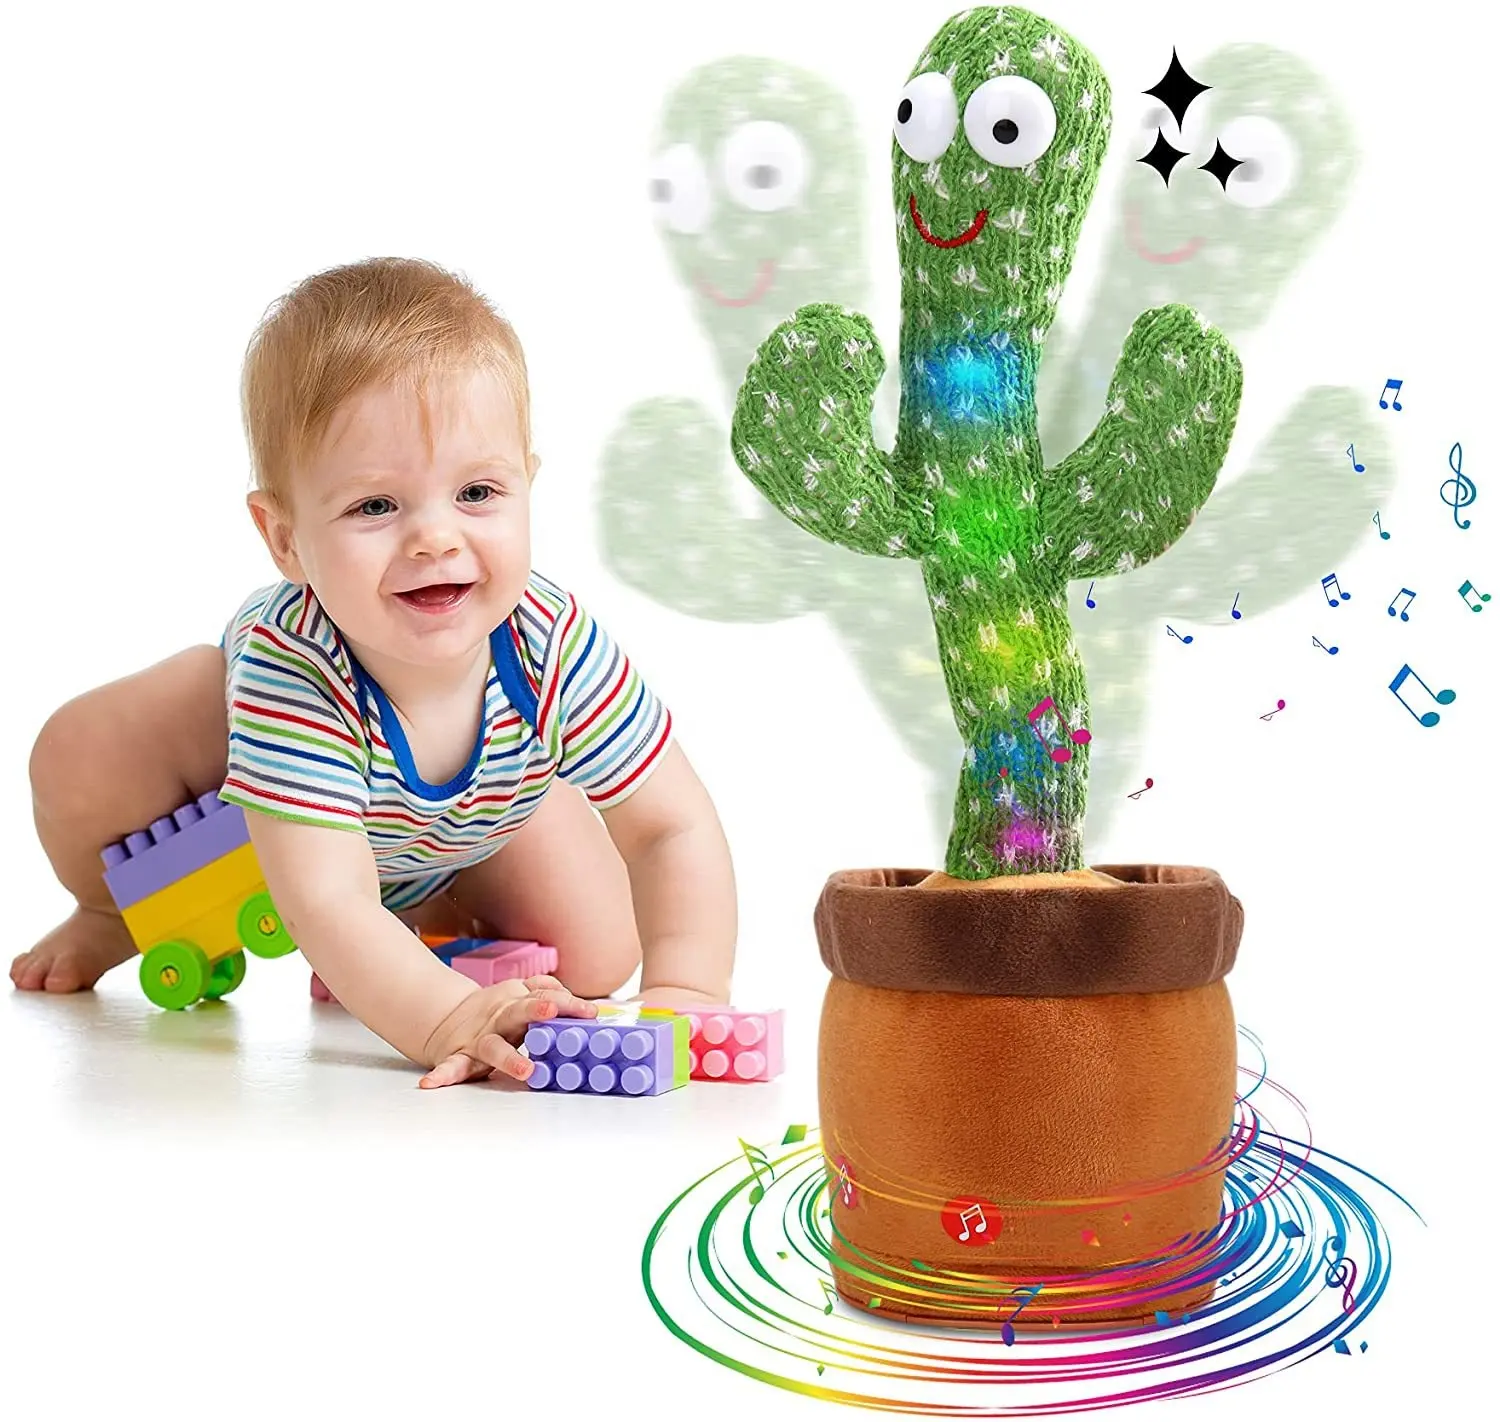 Jouet Cactus dansant parlant chantant en peluche imitant des répétitions enregistrement de chansons musicales drôles Cactus Wiggly bébé jouets